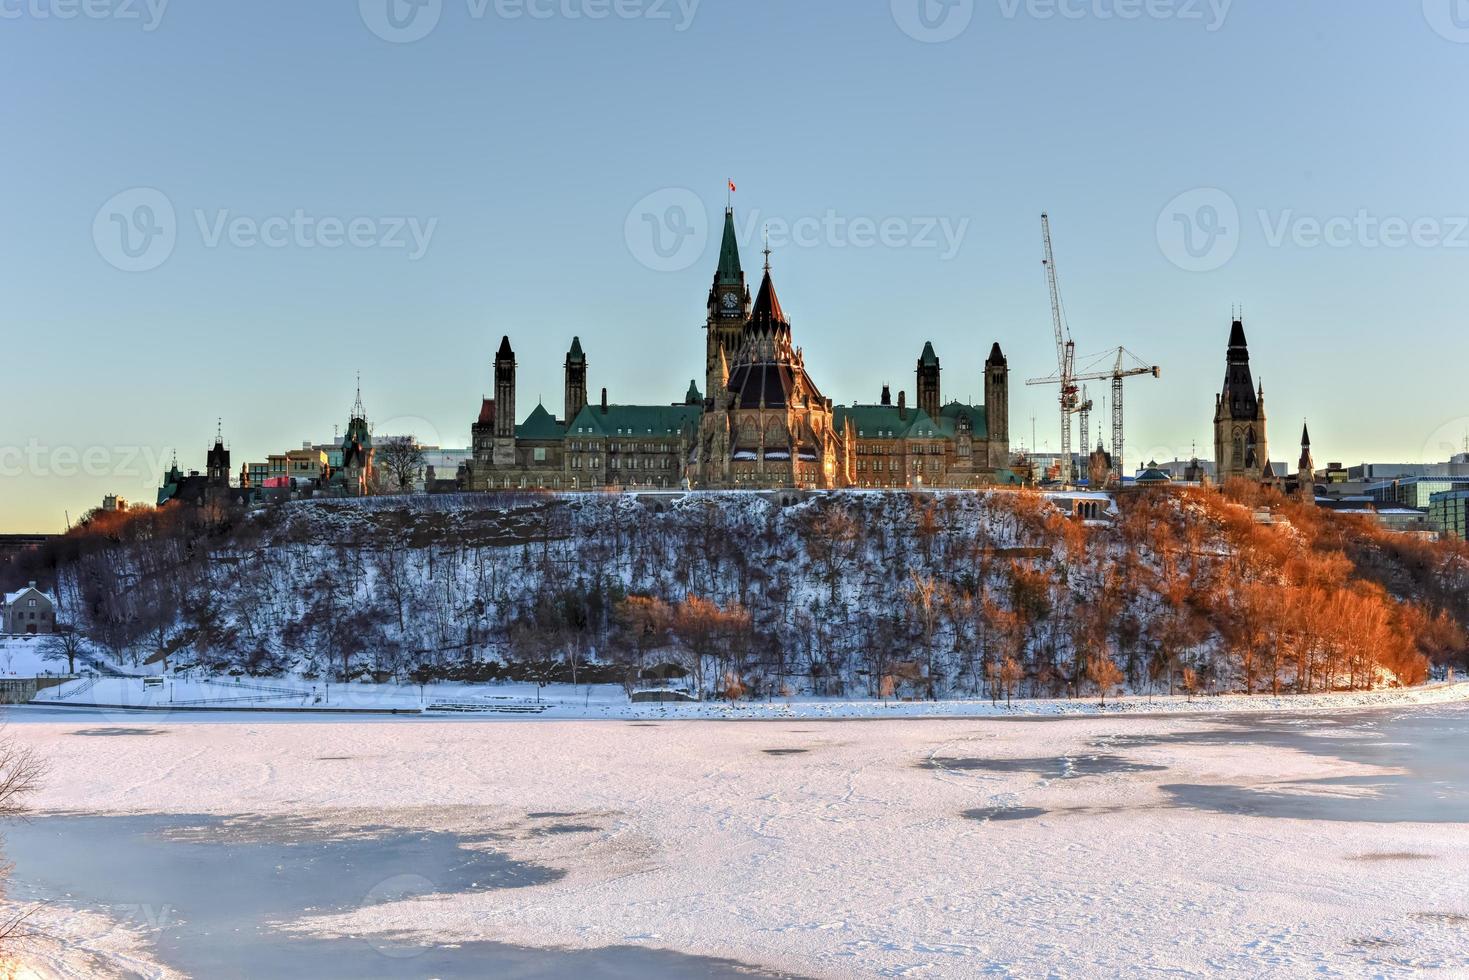 la colina del parlamento y la casa del parlamento canadiense en ottawa, canadá, al otro lado del río congelado de ottawa durante el invierno. foto